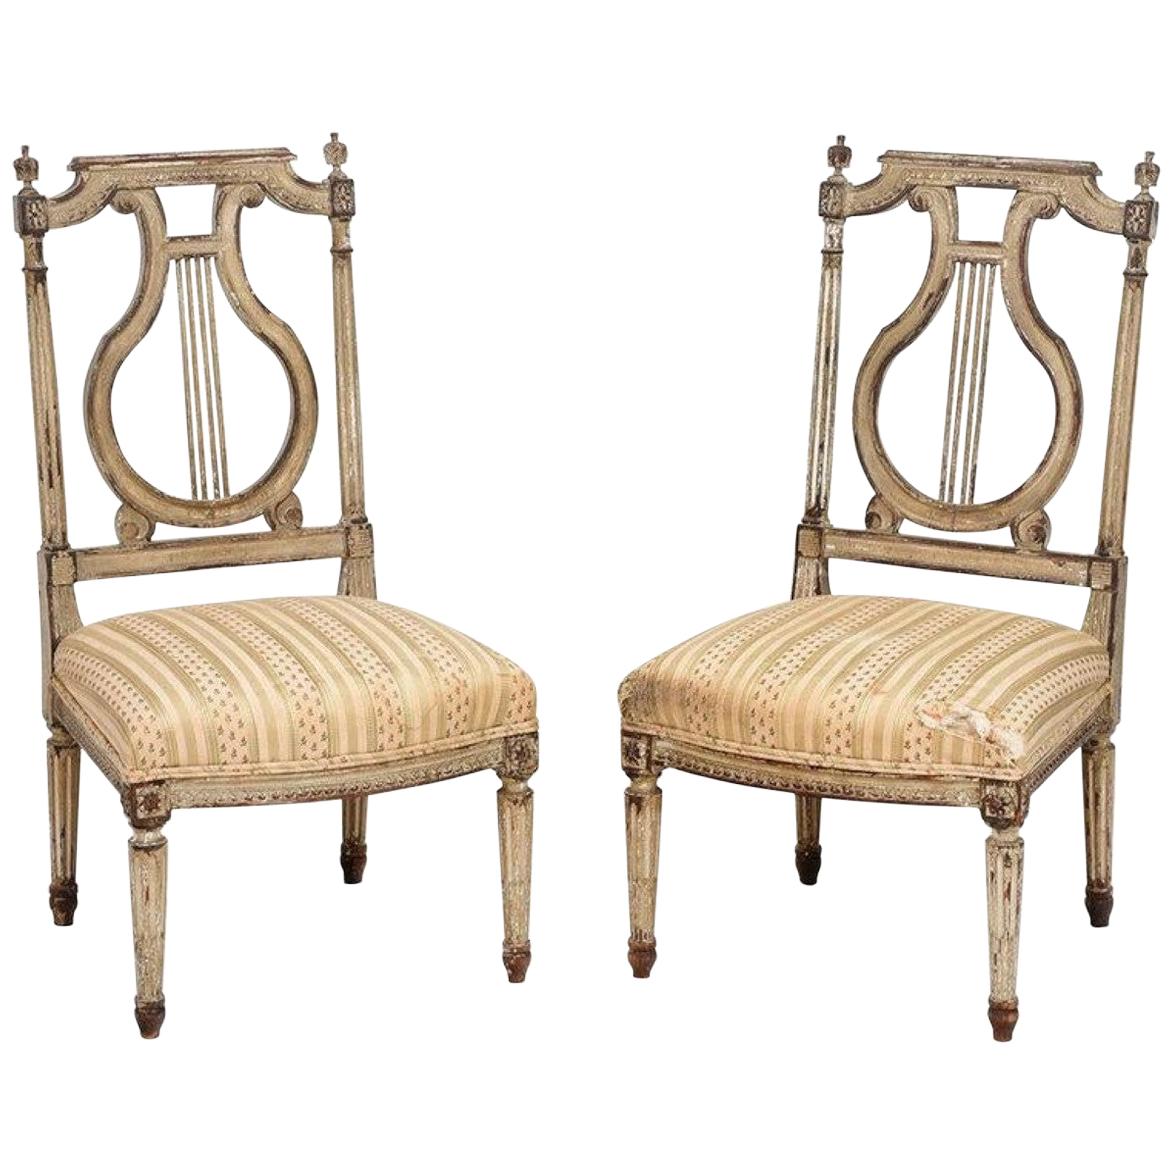 Paire de chaises « Chauffeuse » françaises du 18ème siècle, attribuées à Georges Jacob